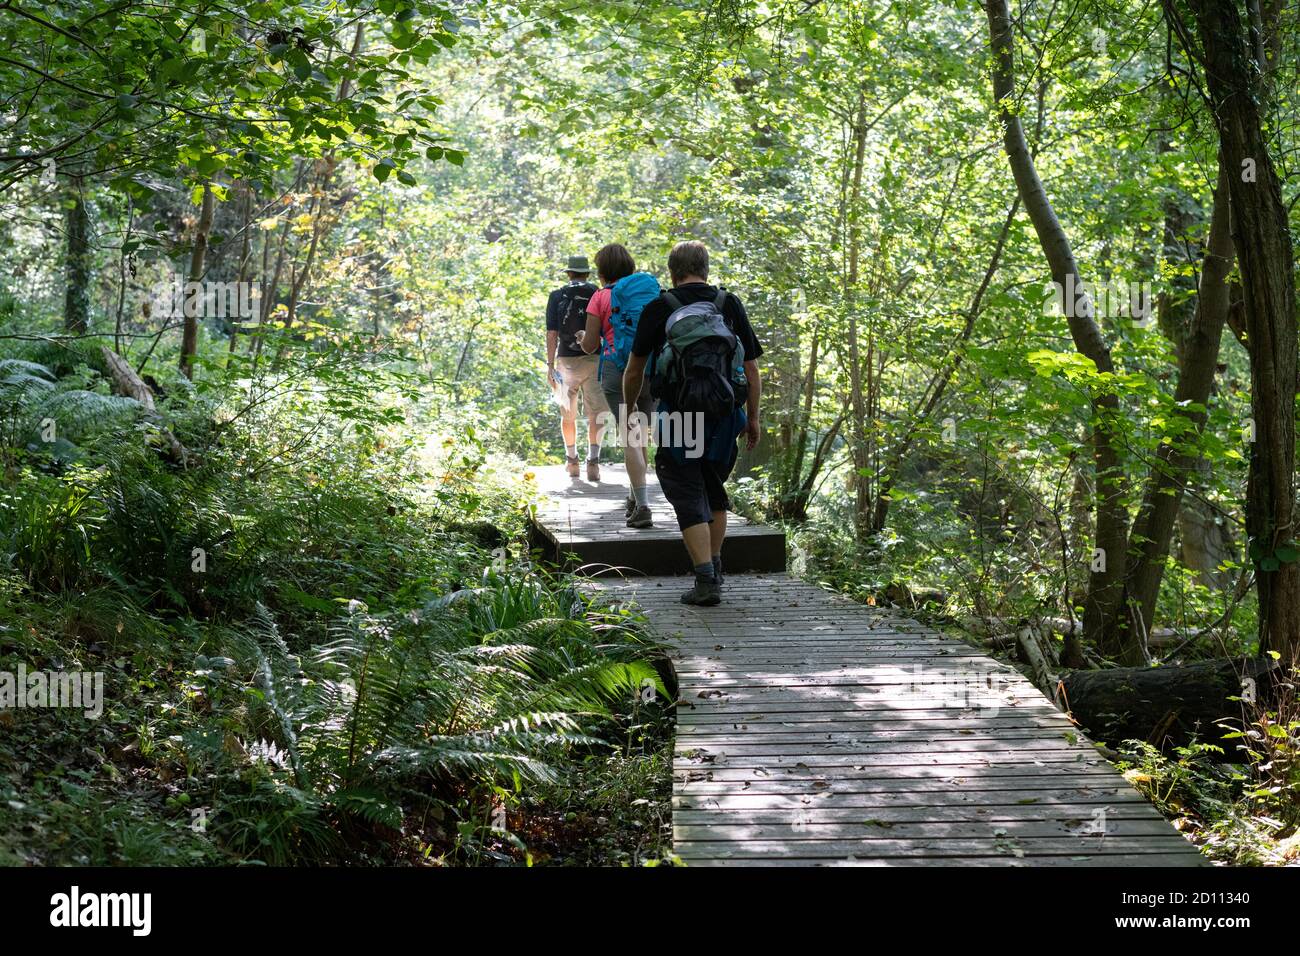 Costeggia gli escursionisti della costa camminando su una passerella in legno rialzata nella riserva naturale di Little Beck Wood, Littlebeck, North Yorkshire, Inghilterra, Regno Unito Foto Stock